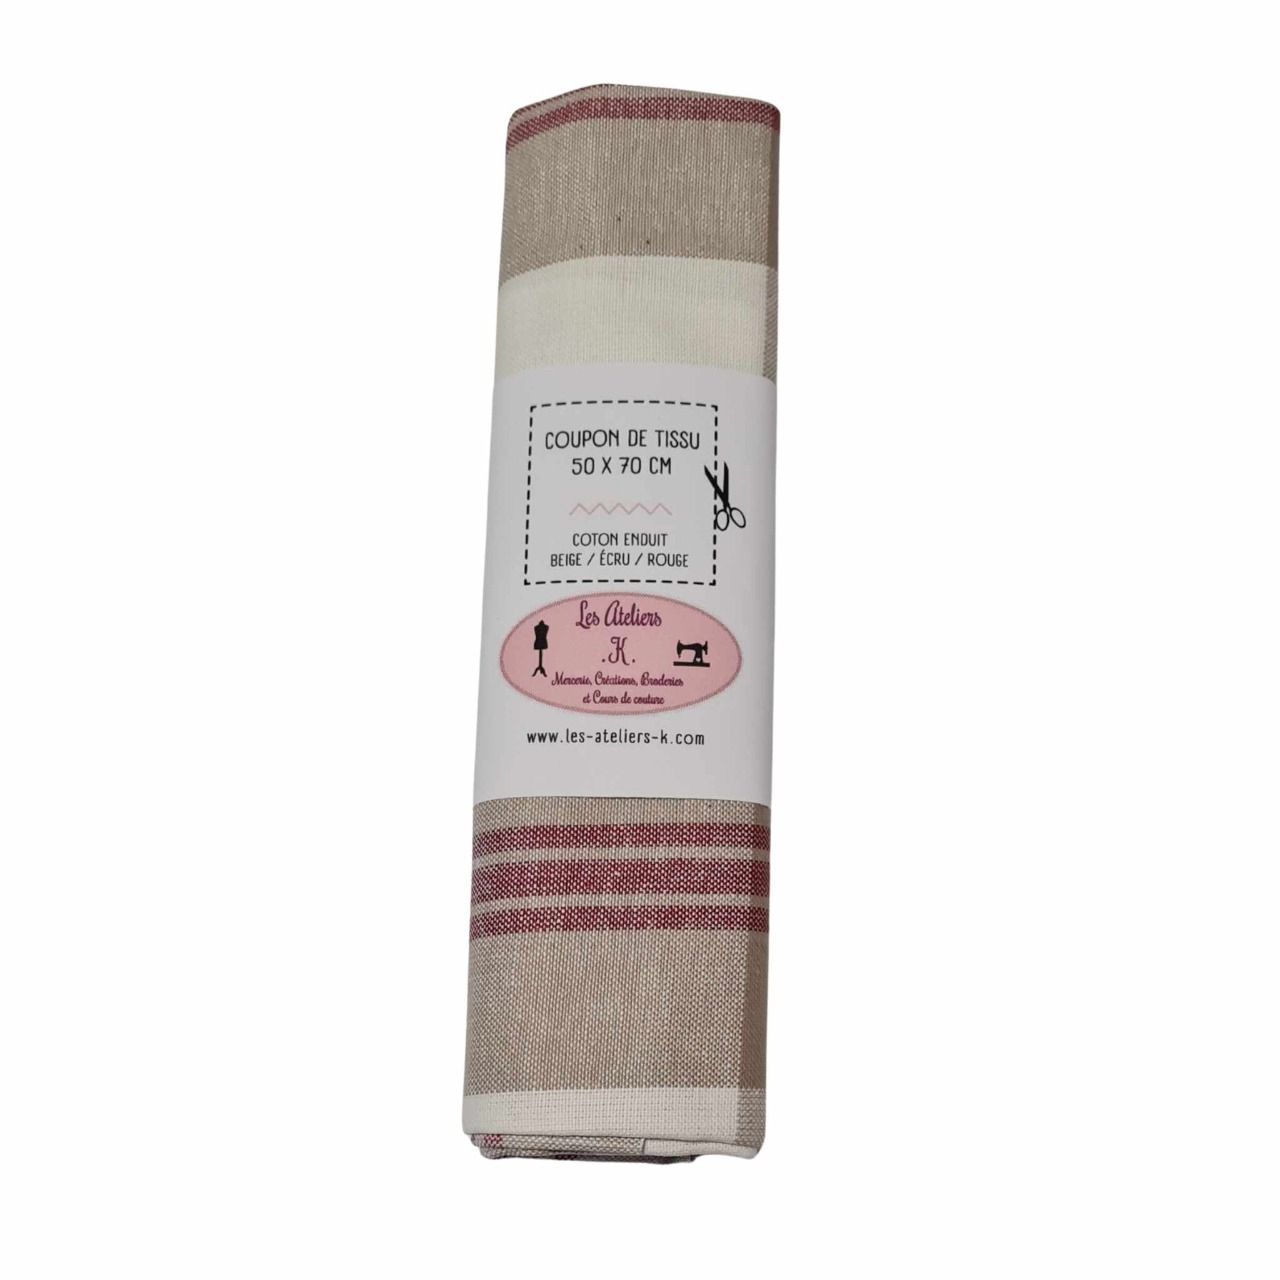 Coupon de tissu en coton enduit beige/écru/rouge  50 X 70 cm   